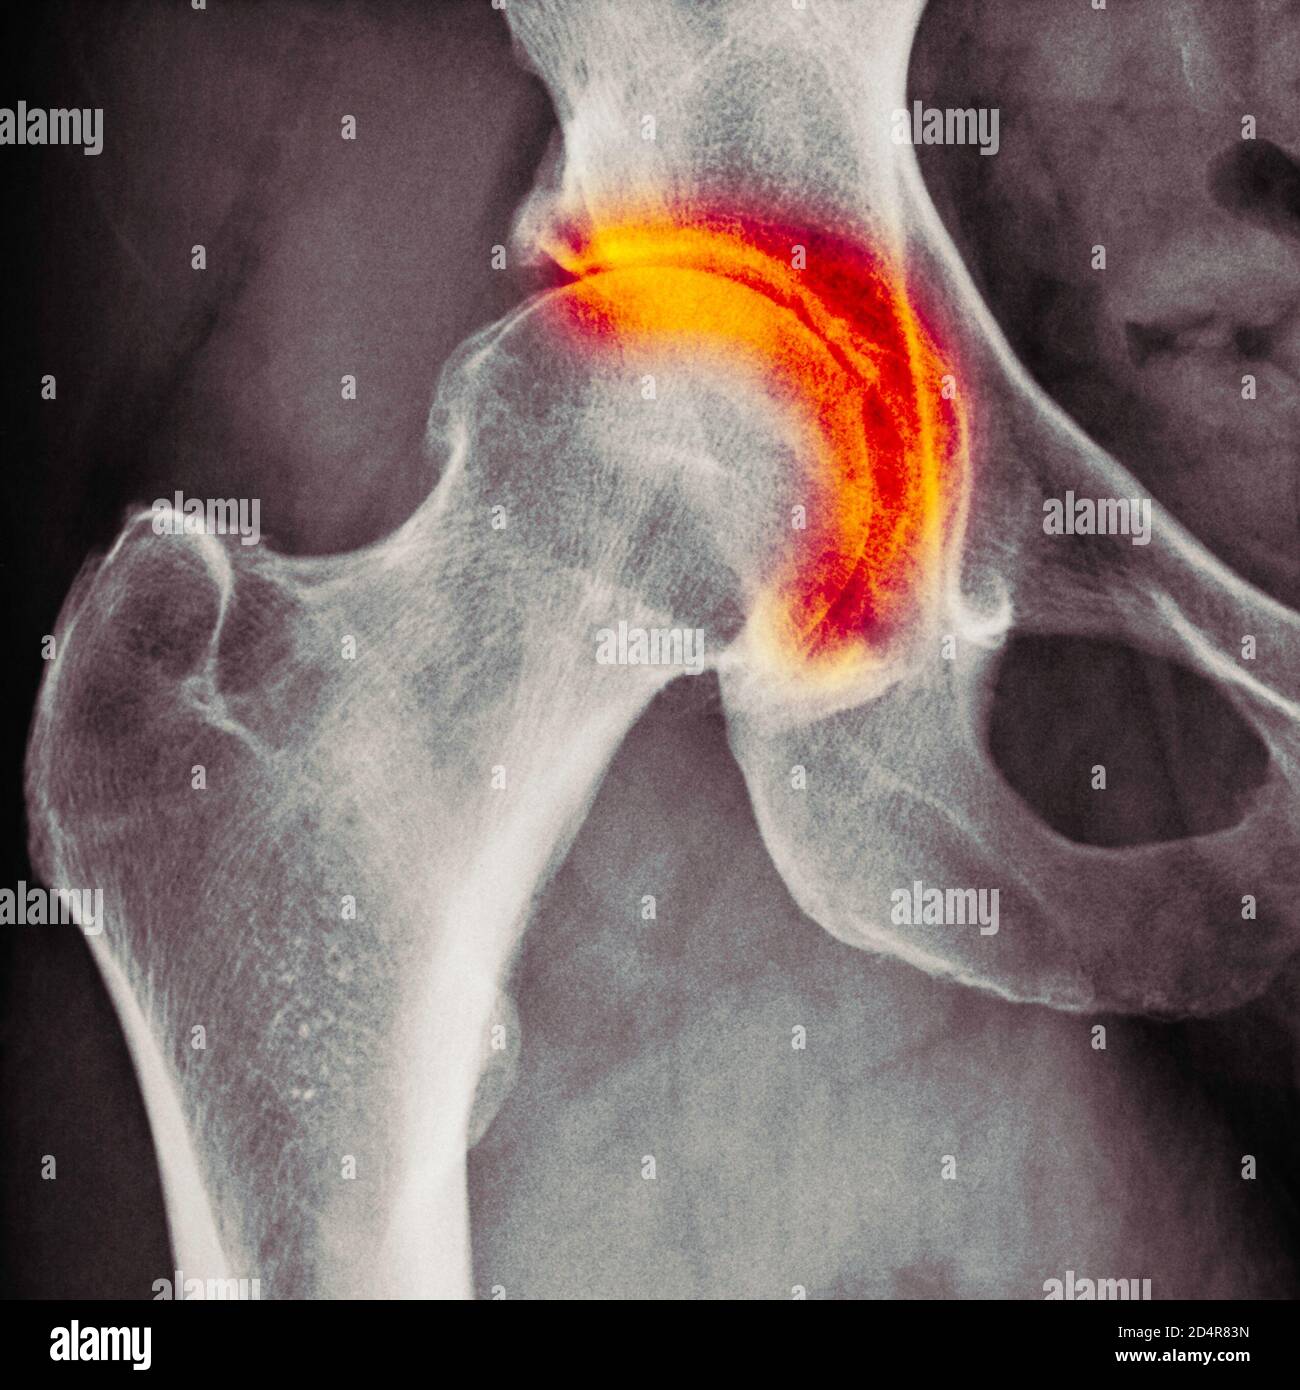 Röntgen zeigt Arthritis der Hüfte, Arthritis ist eine Gelenkerkrankung, die Knorpelzerstörung, Knochenerodieren und Sehnenentzündung verursachen kann. Stockfoto